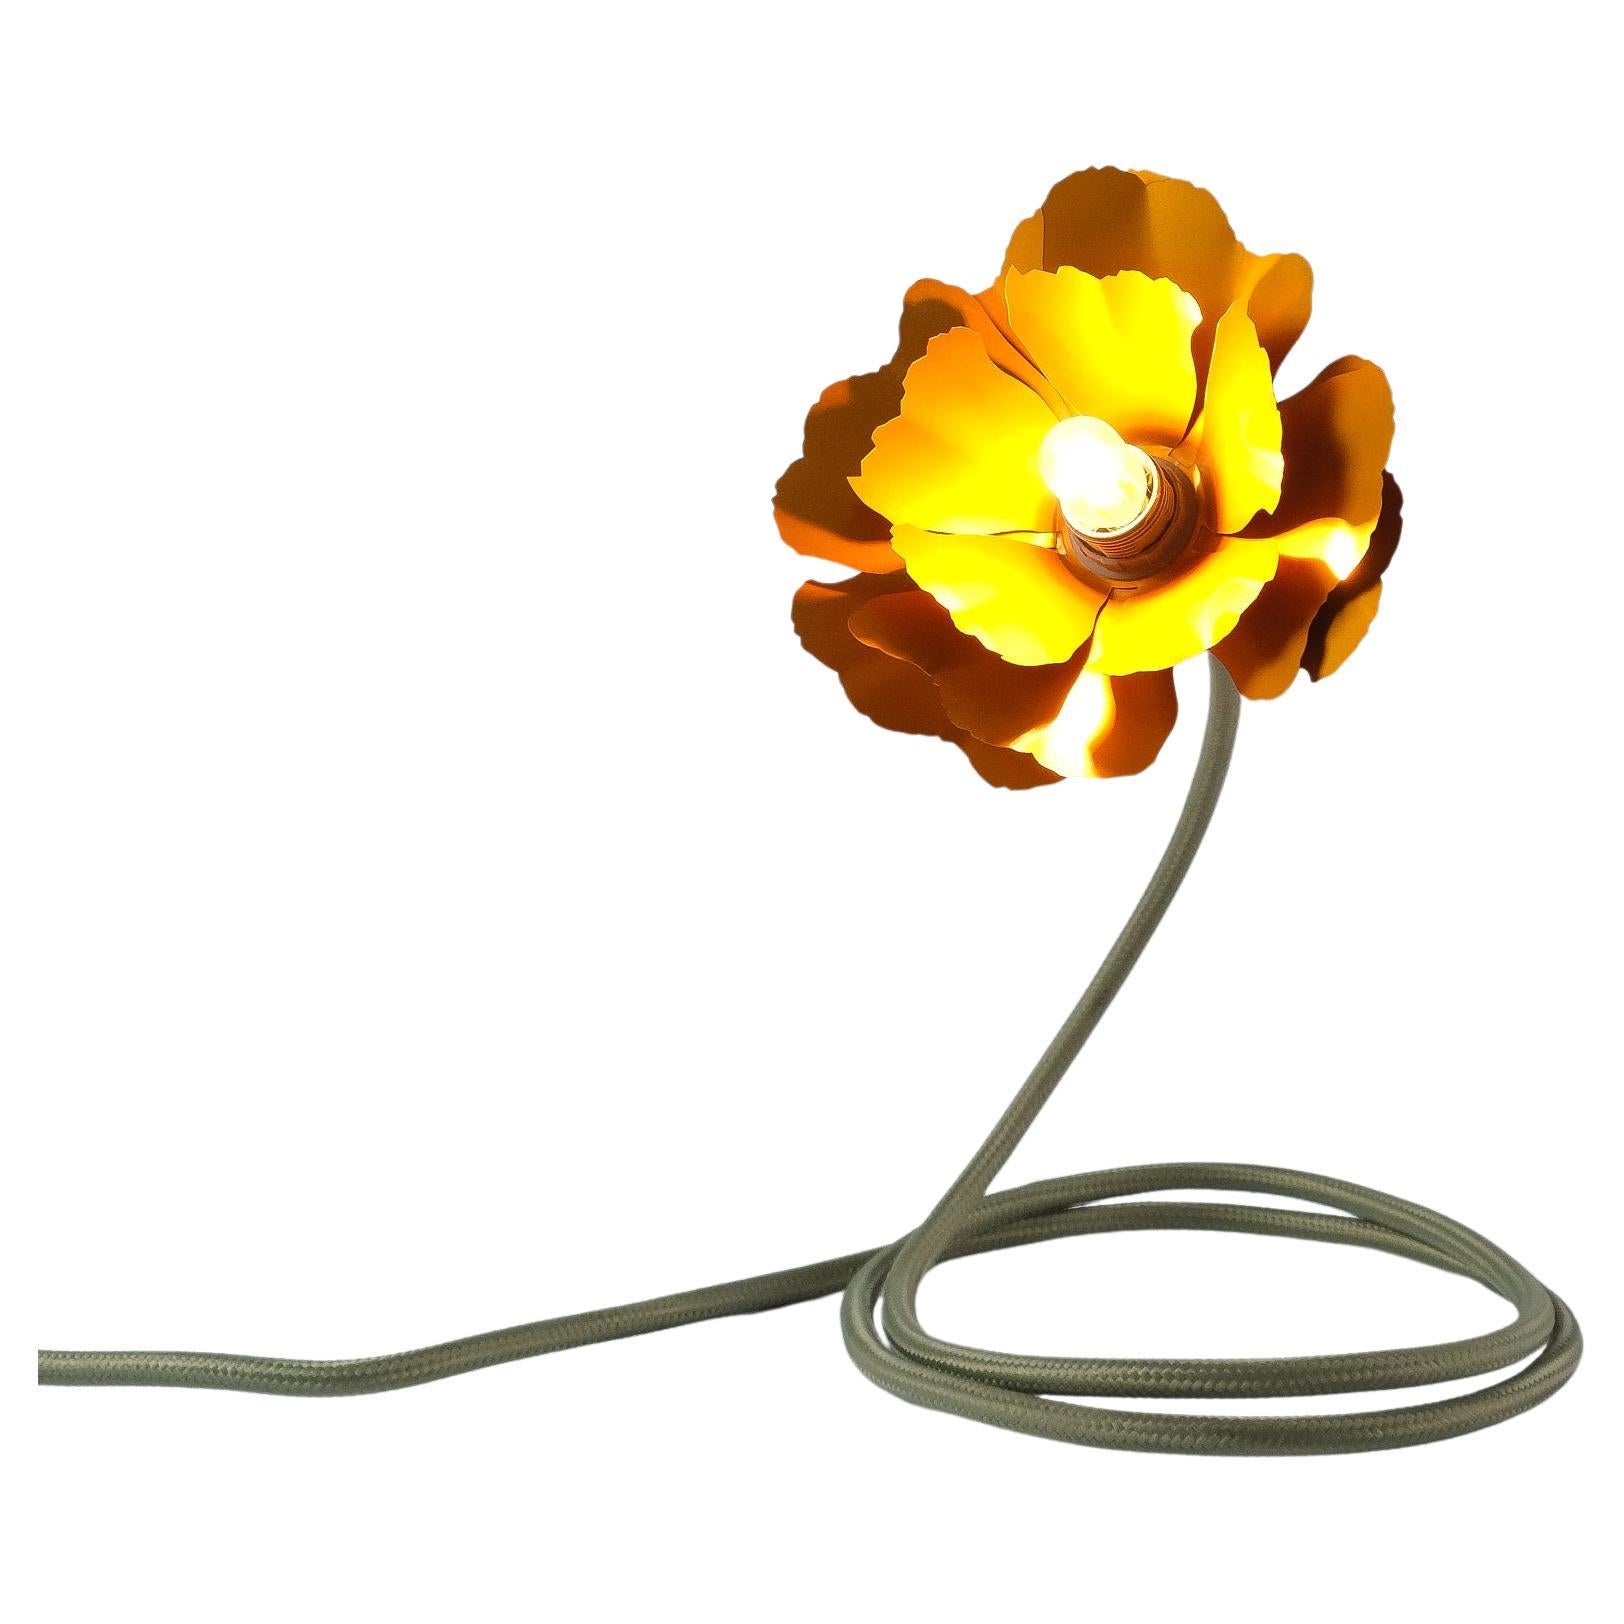 Helena Christensen's Flexible Flower Lamp for Habitat “V.I.P” Collection, 2004 For Sale